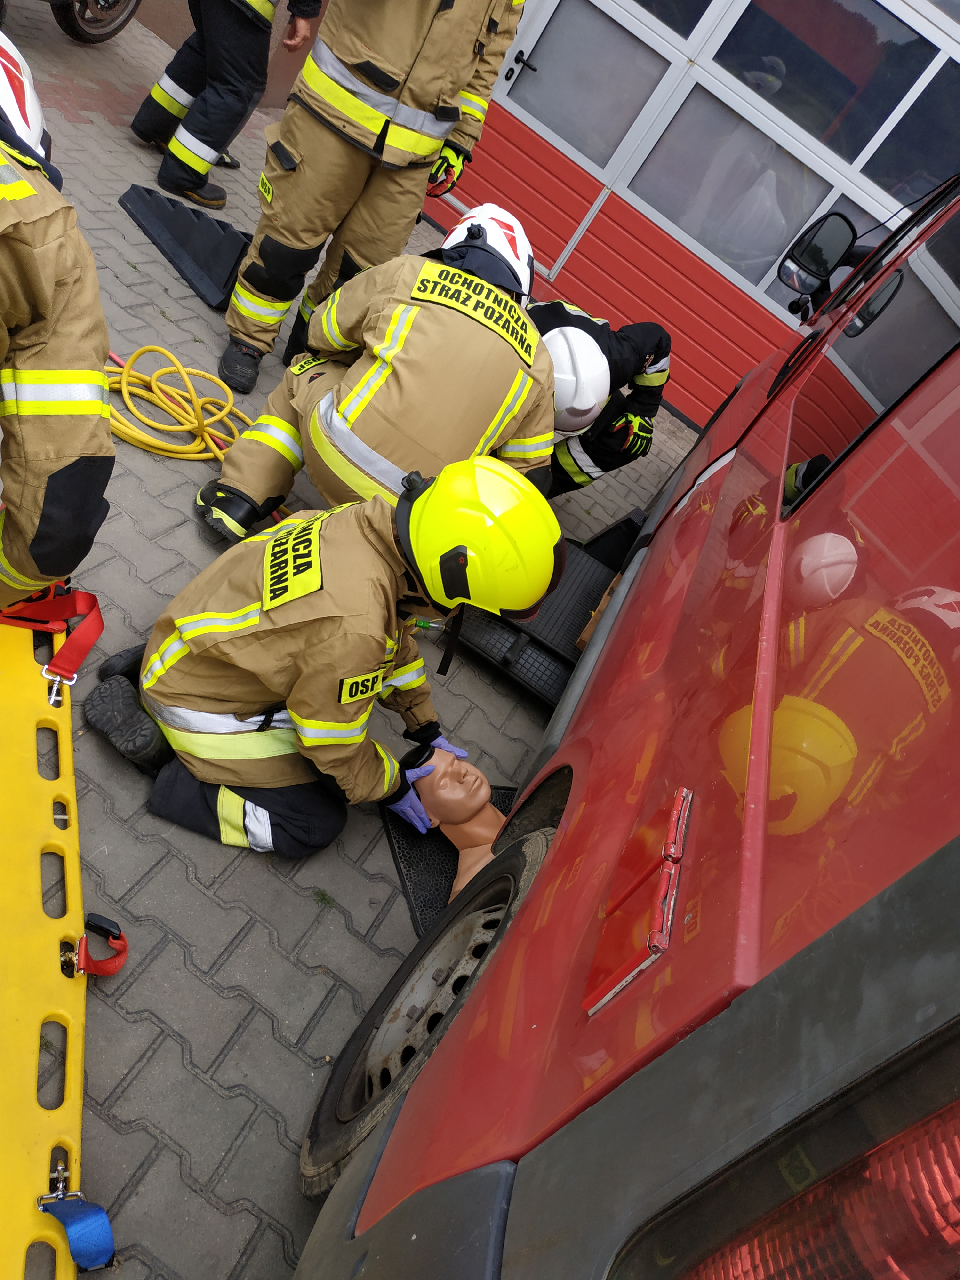 Wyszkolony strażak OSP jest w stanie skutecznie i sprawnie uczestniczyć w działaniach ratowniczo-gaśniczych